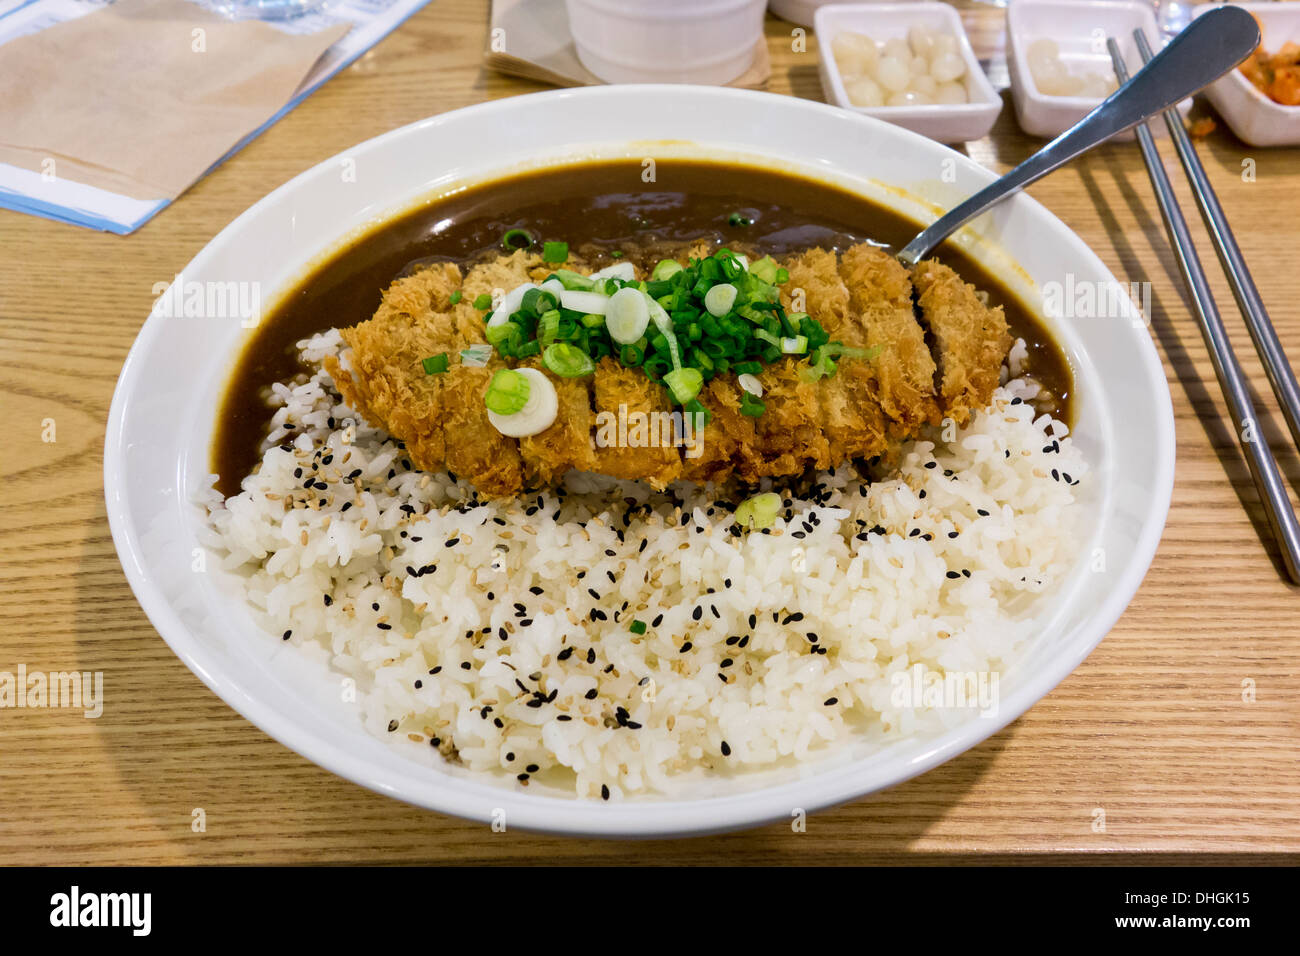 Katsu Karē est un plat japonais composé de curry et de riz servi avec une escalope de porc panée sur le dessus. Banque D'Images